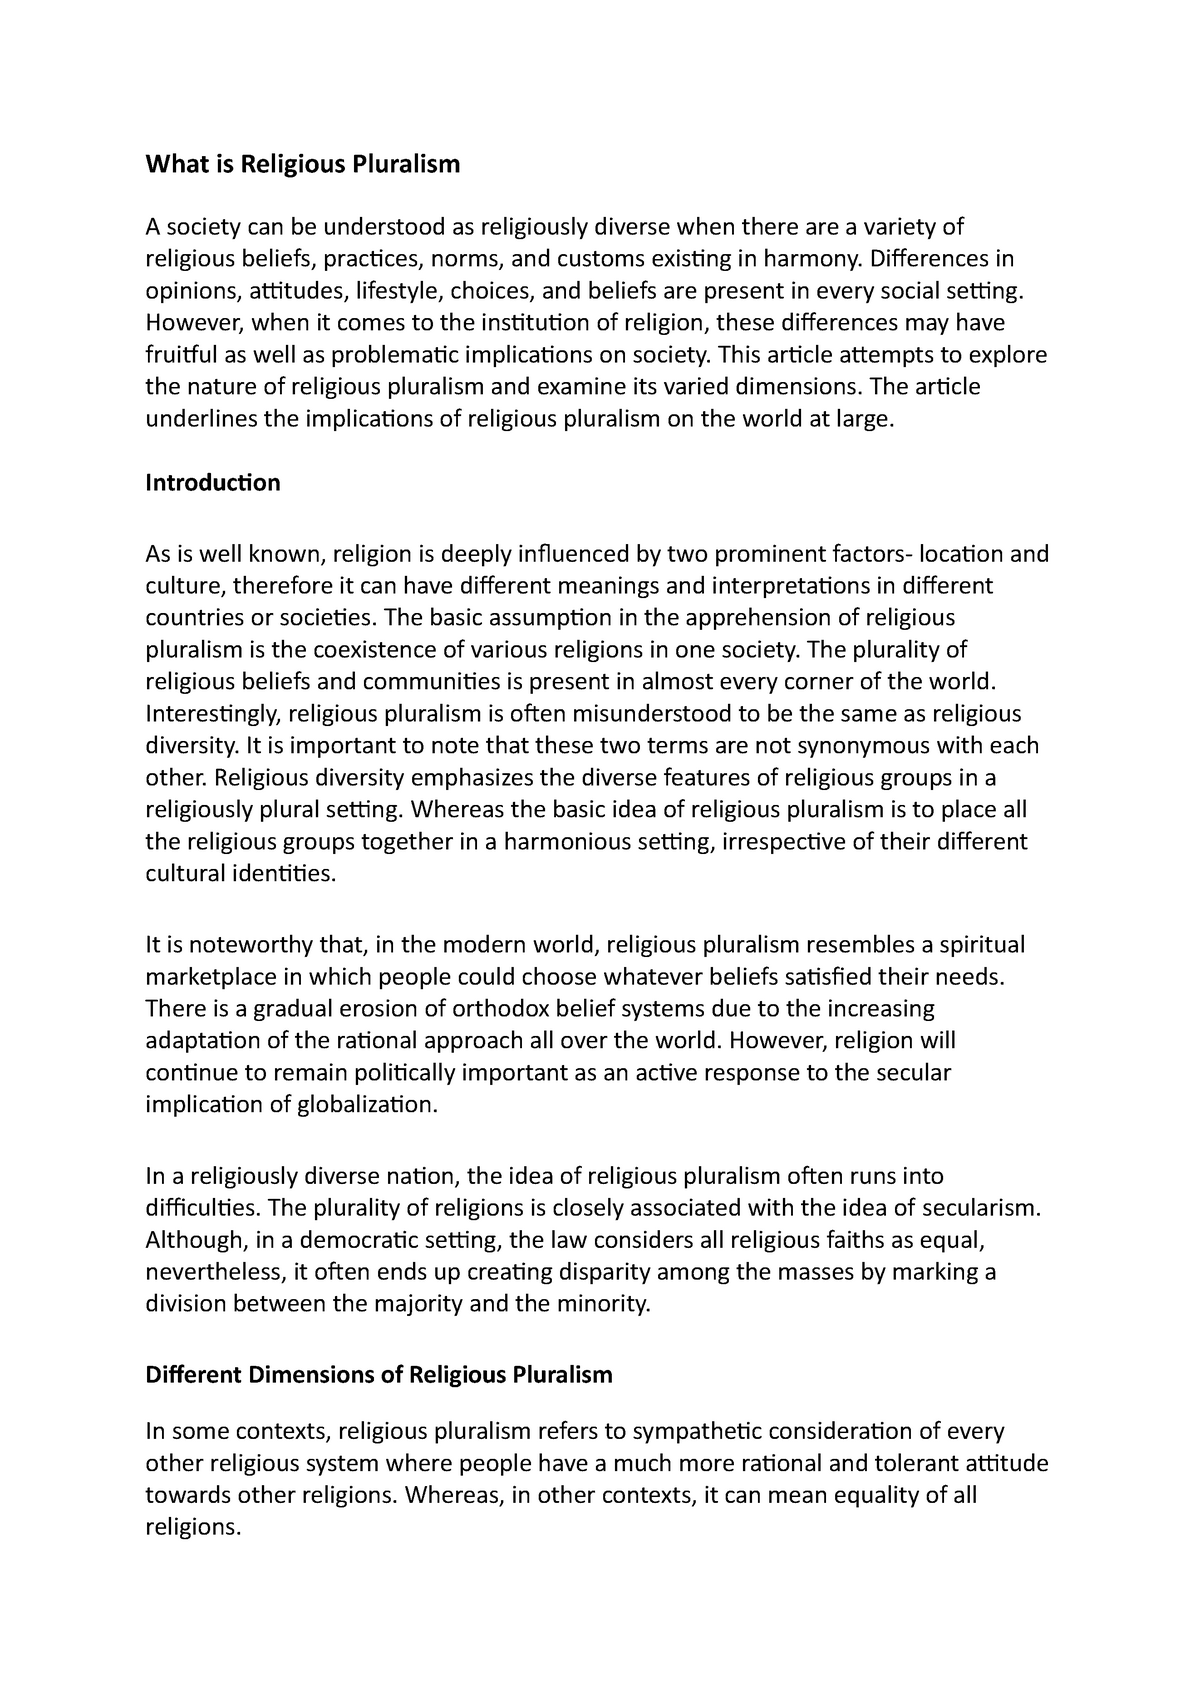 religious pluralism essay questions